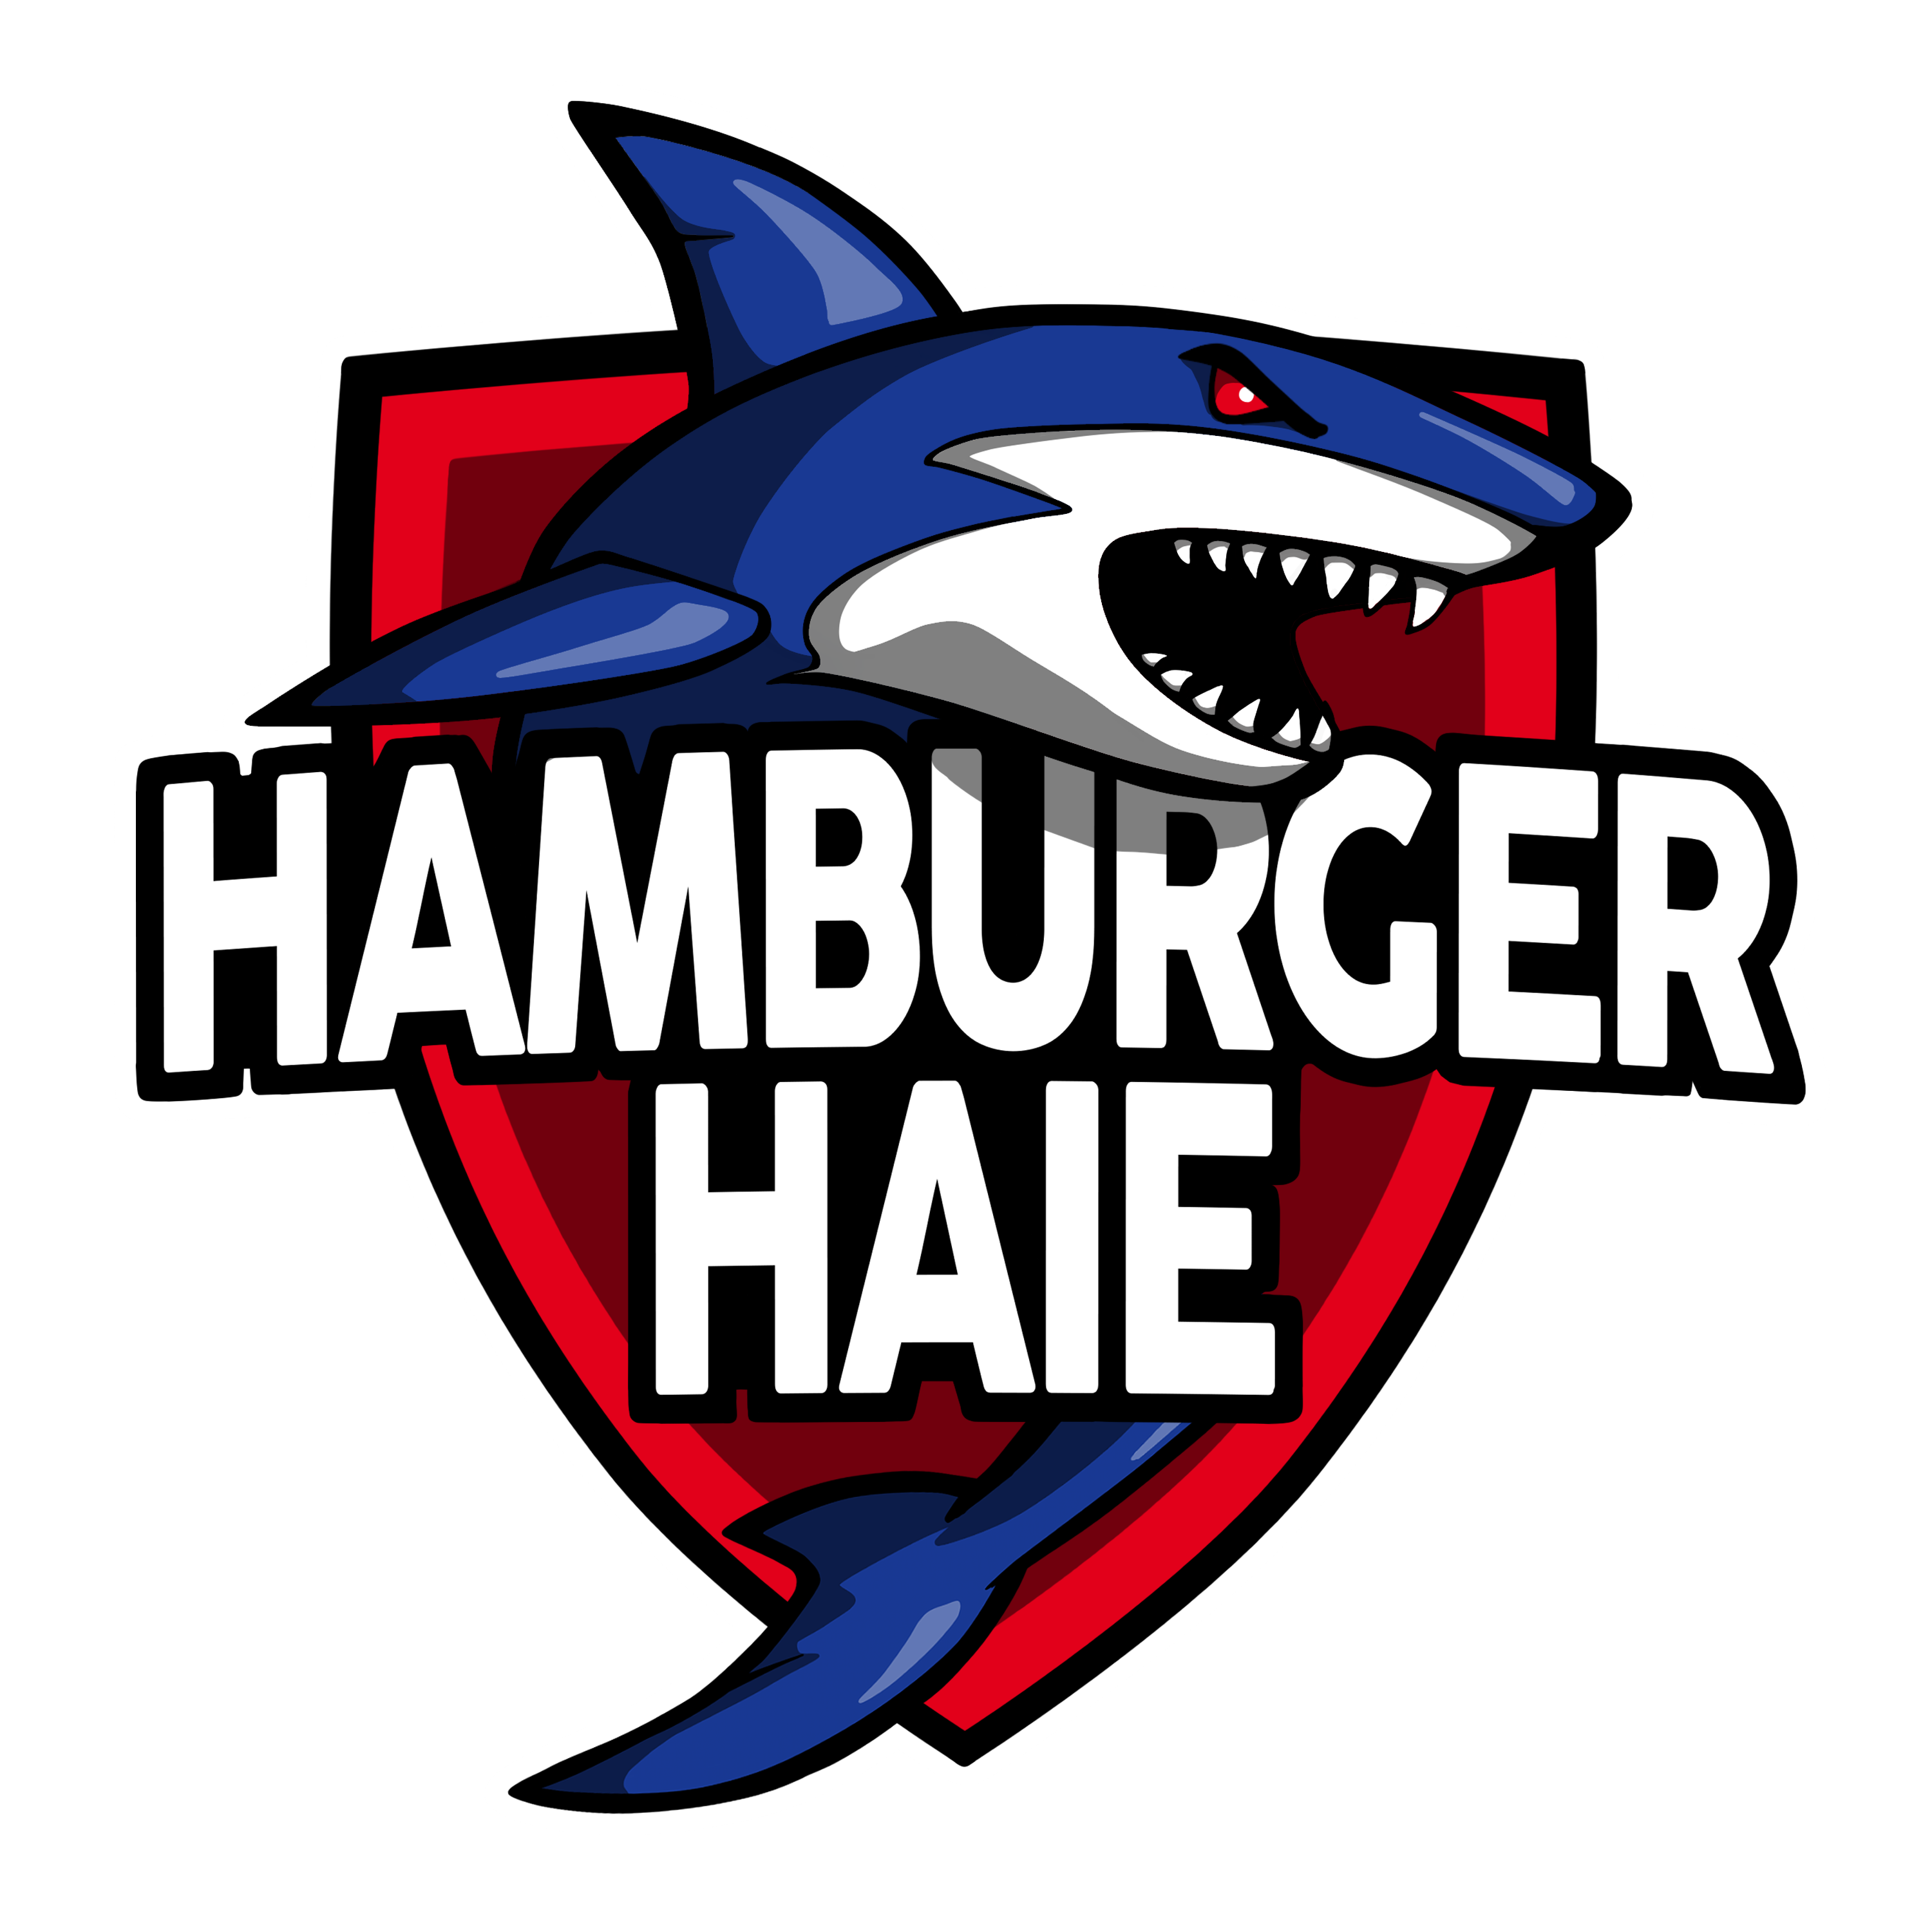 Hamburger Haie